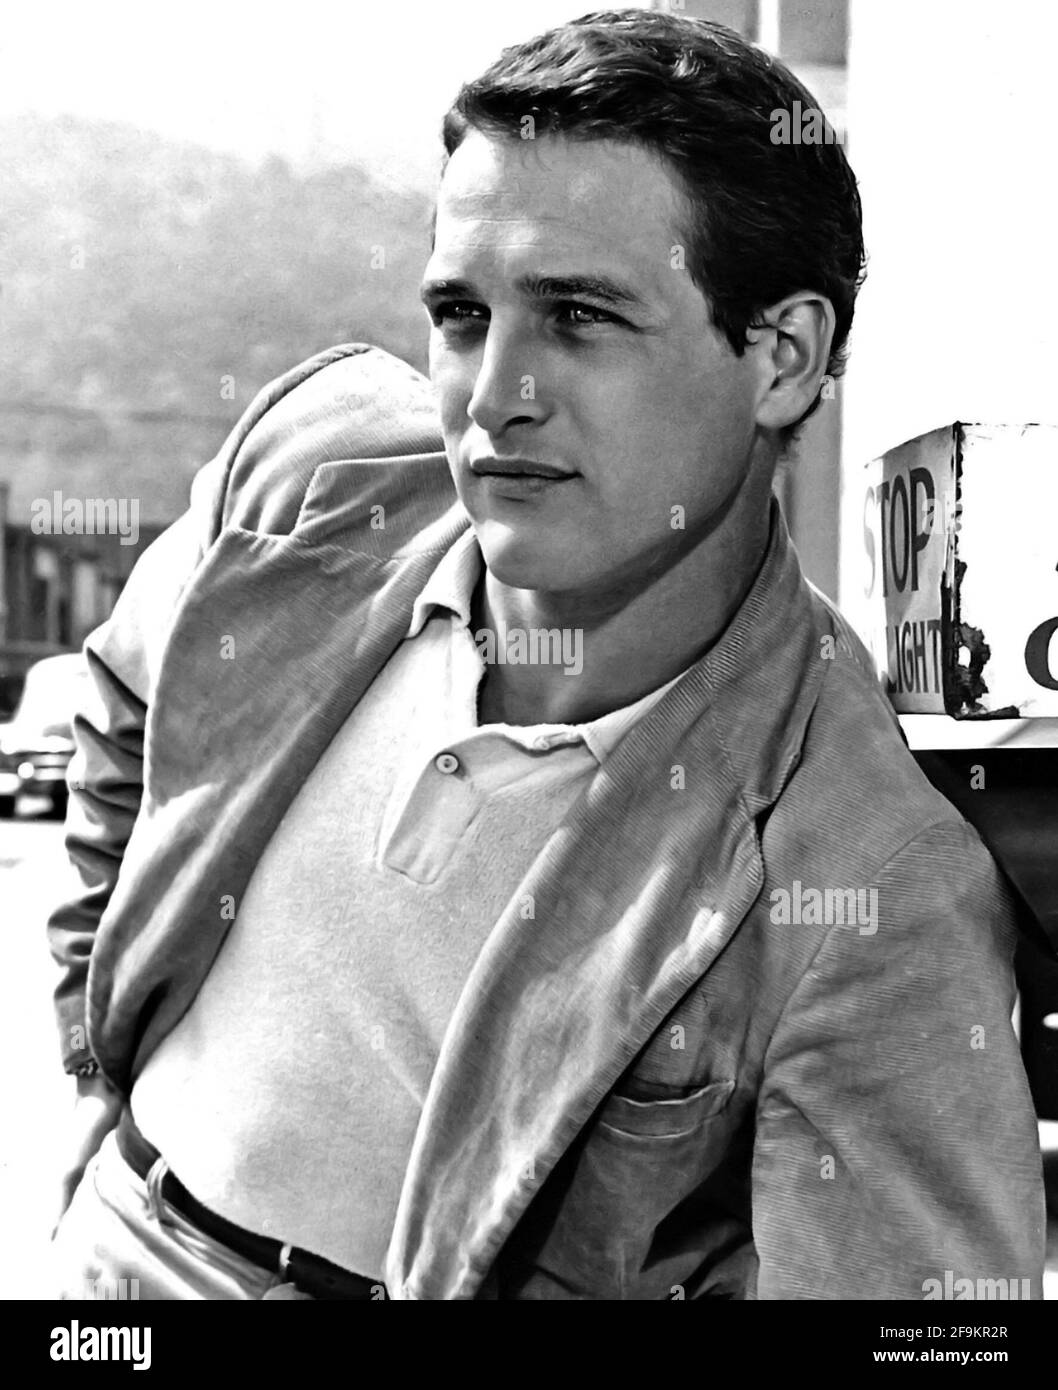 Poster Affiche Paul Newman Voiture Style Acteur Photo Vintage Portrait Star 